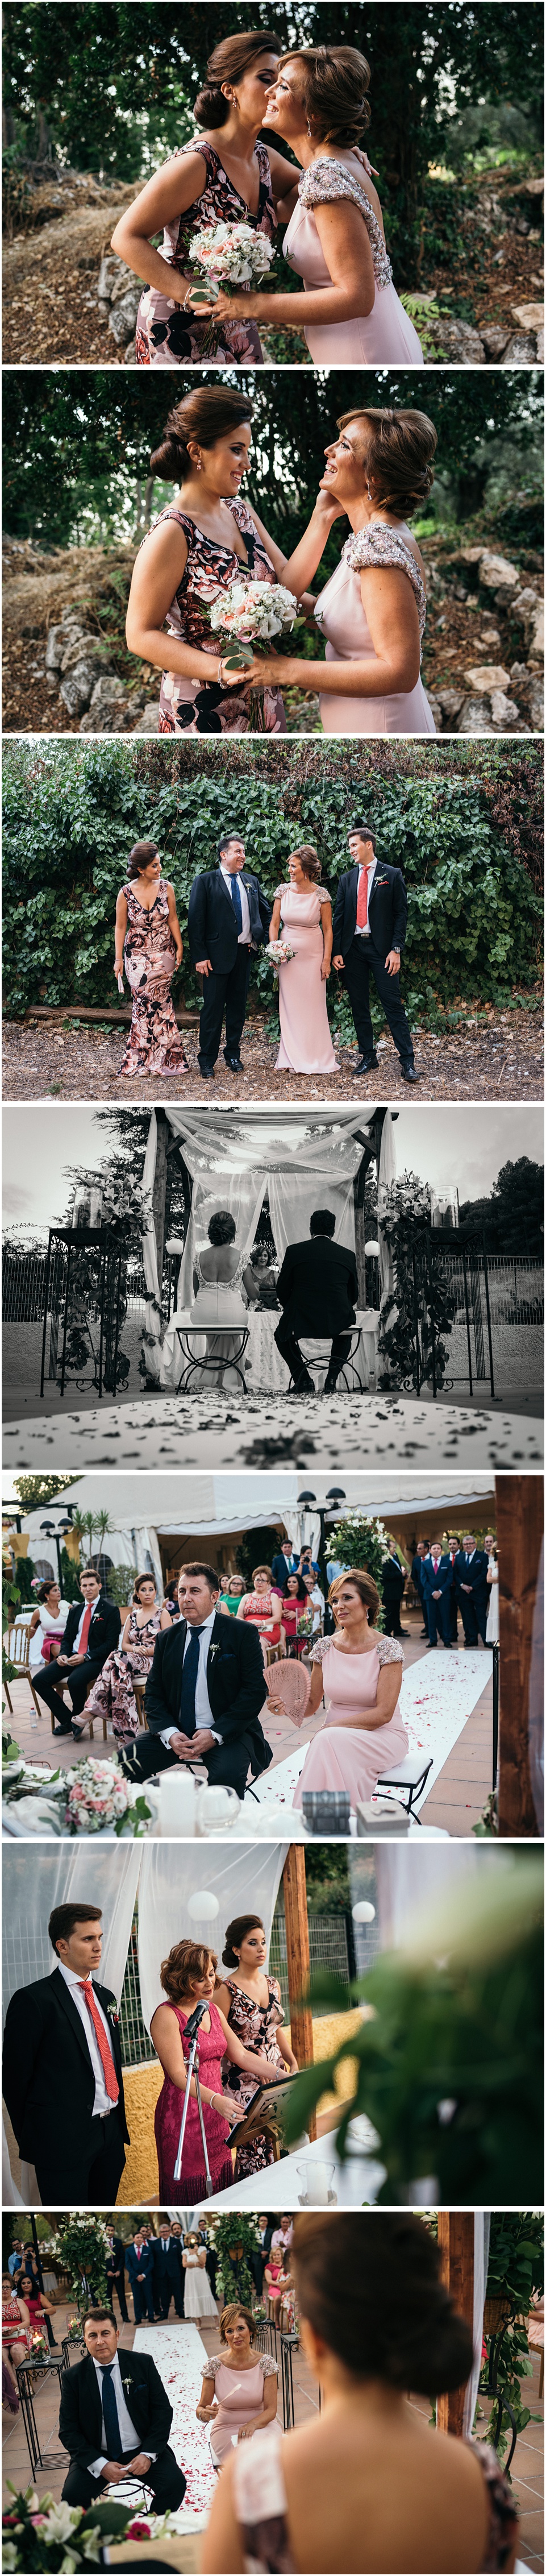 25 años de casados,Boda de plata,bodas,bodas en jaen,fotografia de boda,fotografo de bodas,